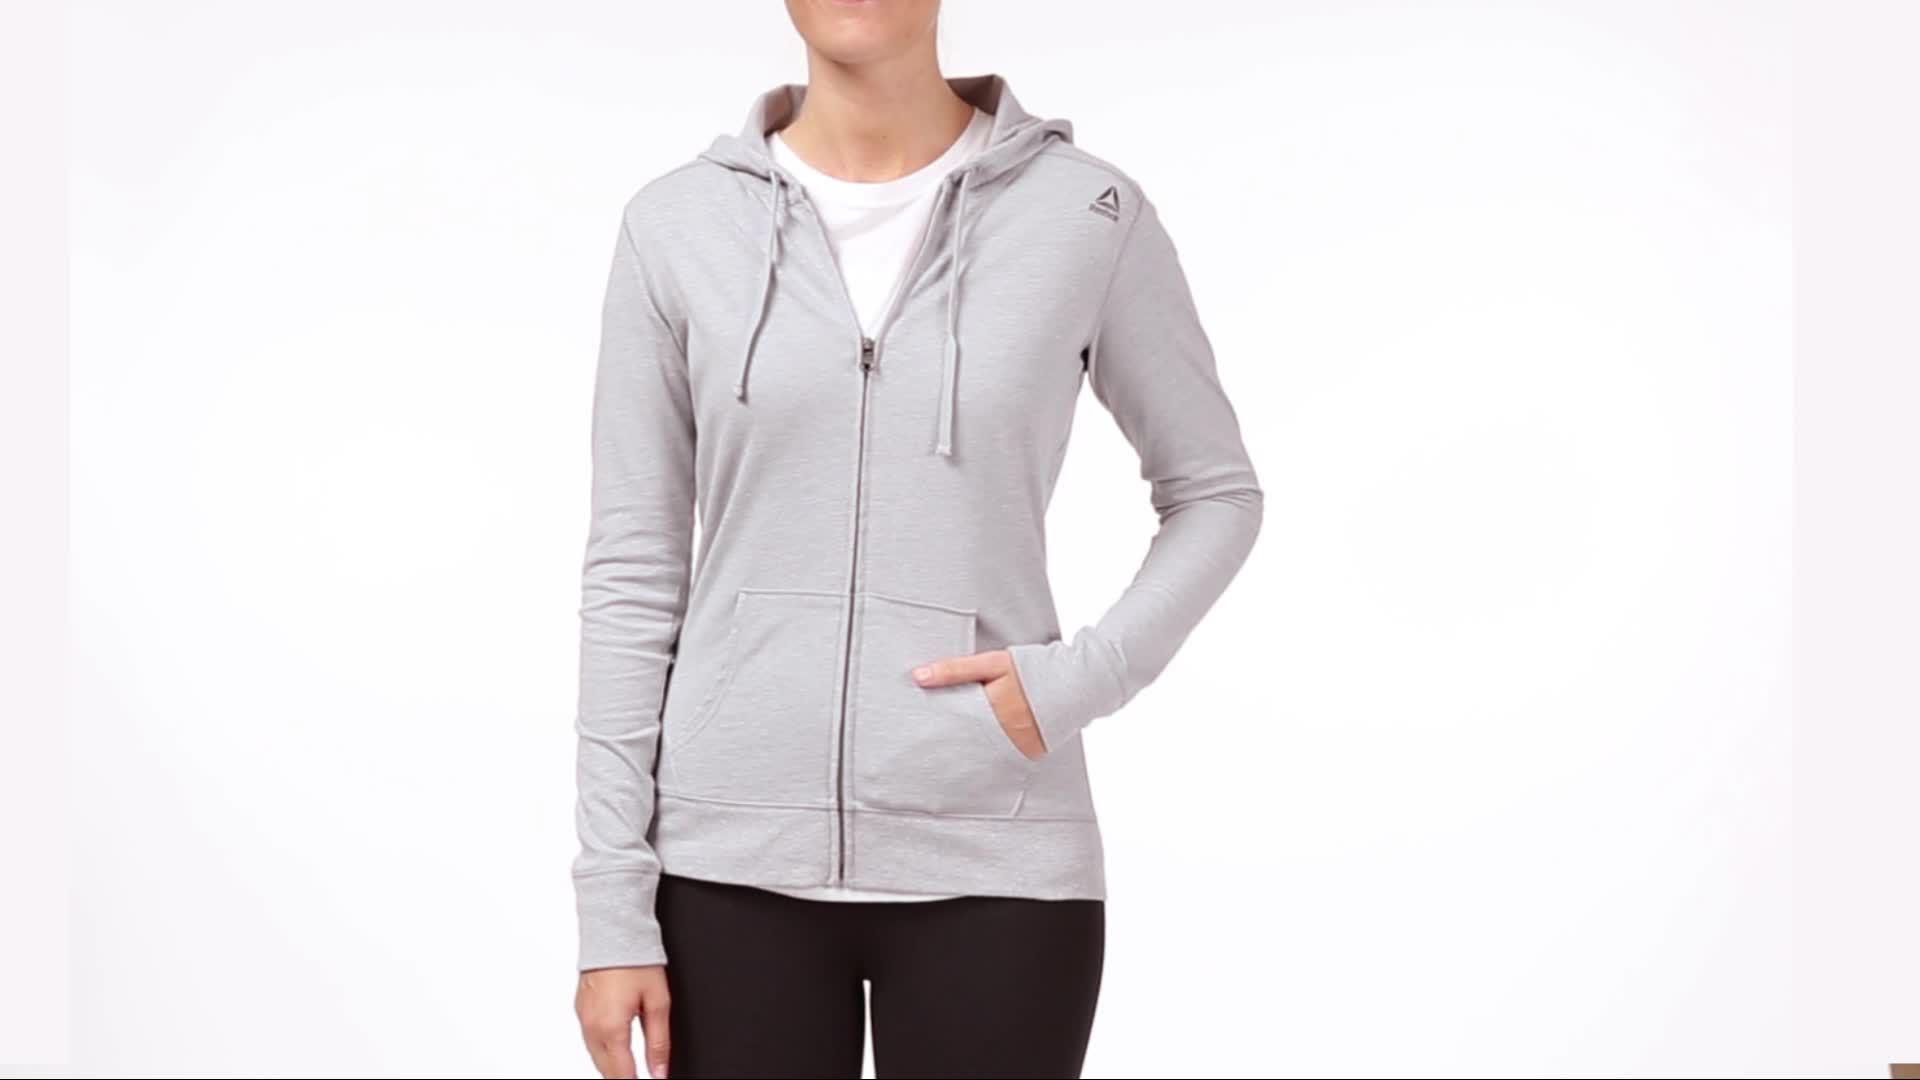 reebok women's core cotton jersey zip front hoodie